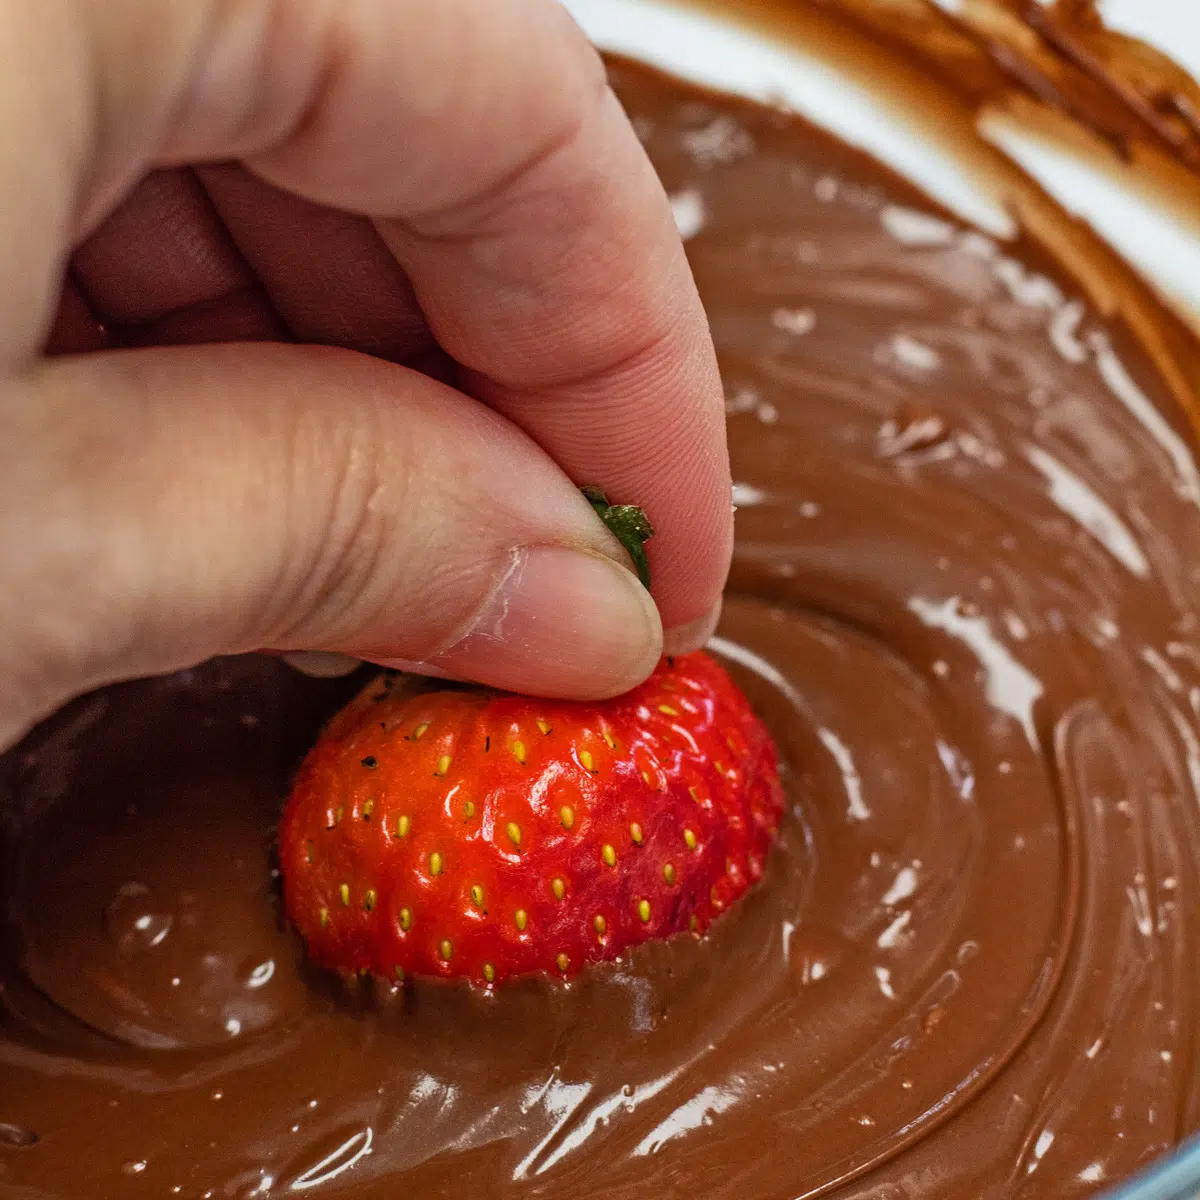 كيفية إذابة رقائق الشوكولاتة مثل شوكولاتة التغميس الكريمية الناعمة المستخدمة مع الفراولة.